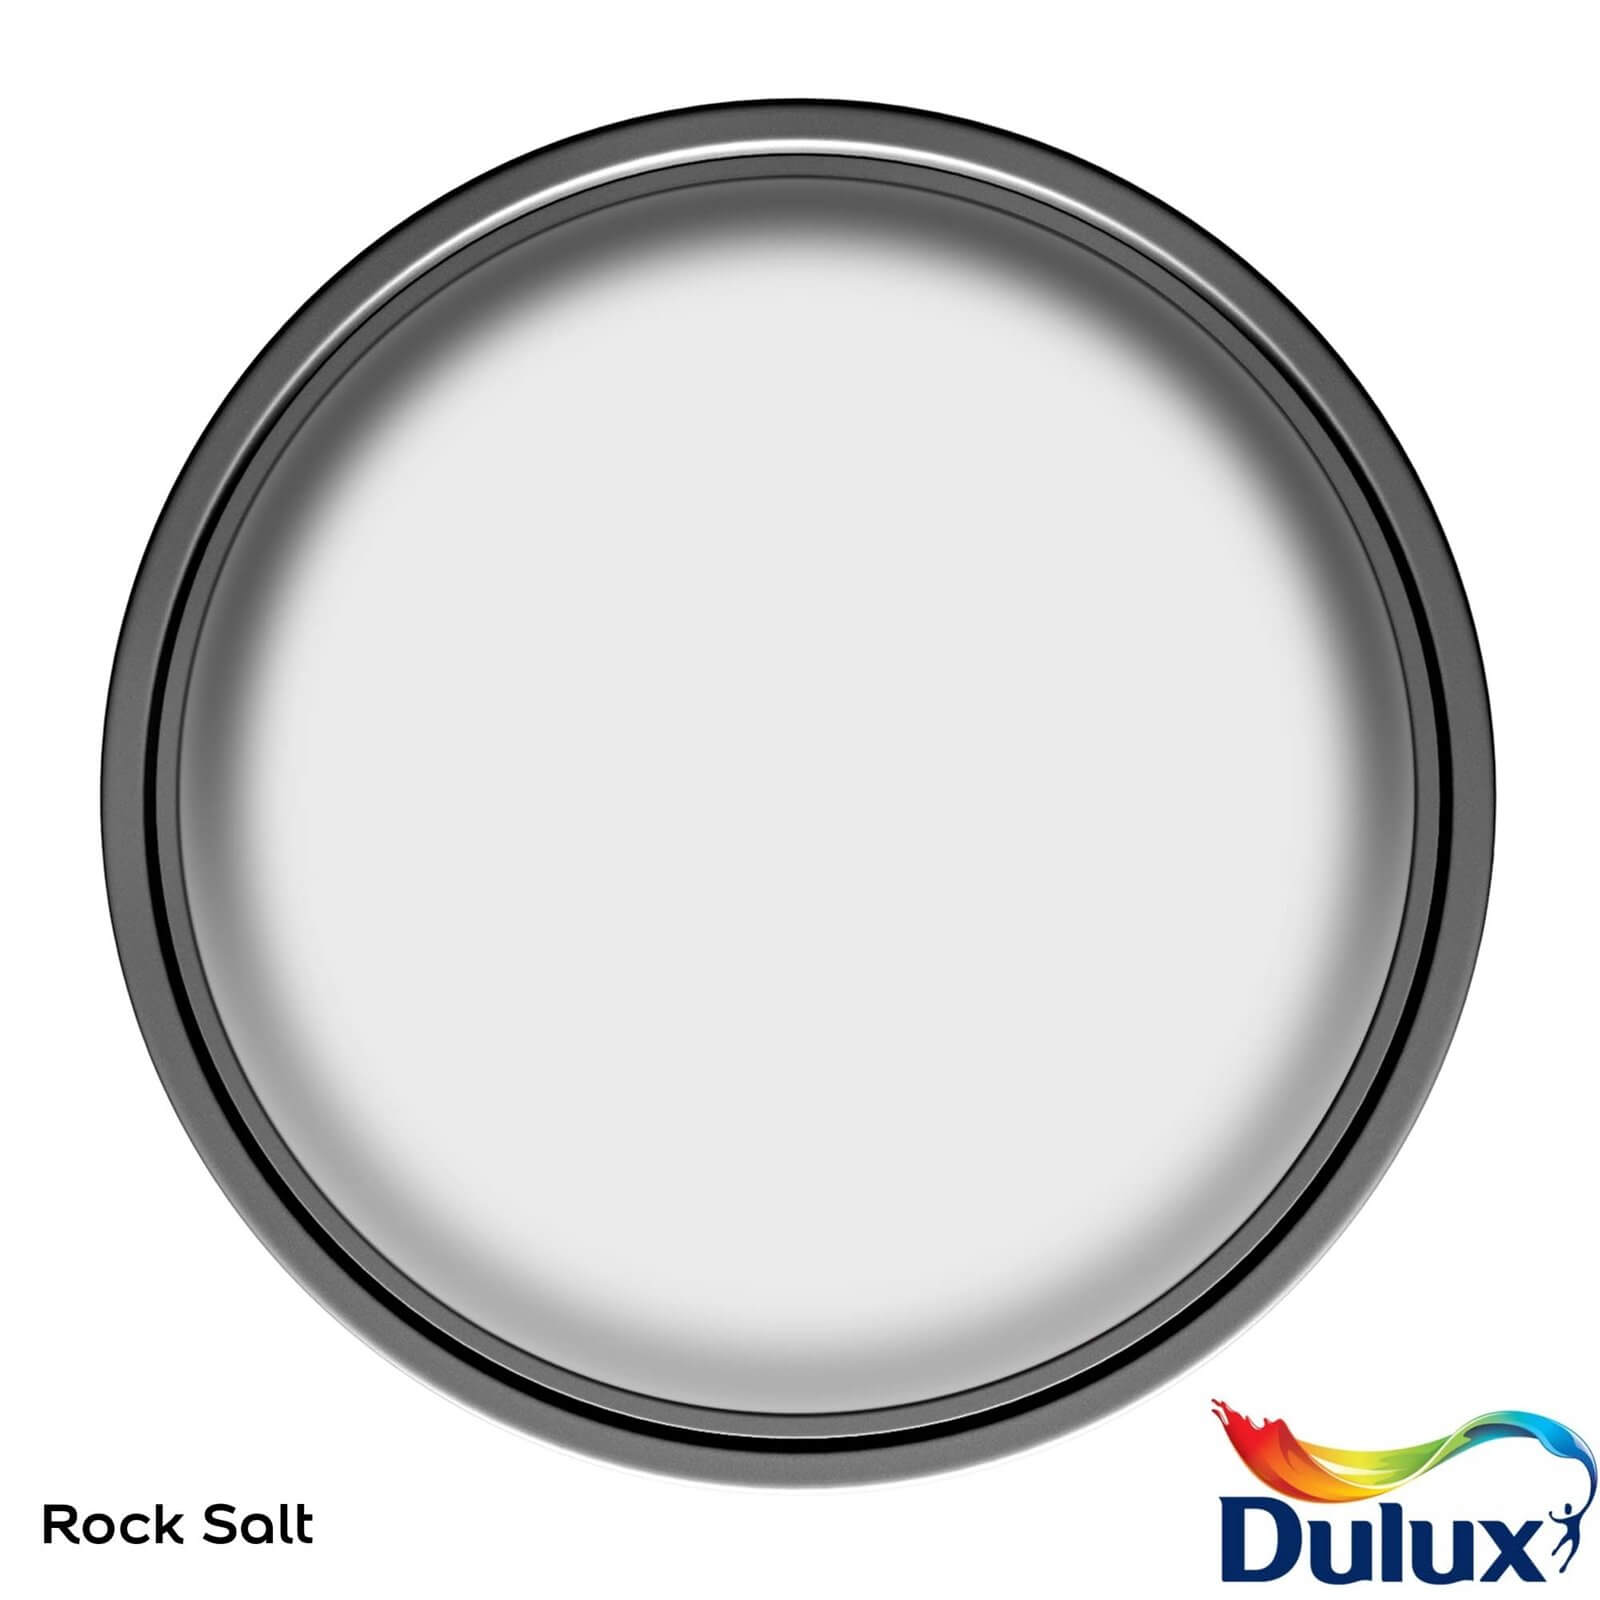 Dulux Easycare Washable & Tough Matt Paint Rock Salt - 5L